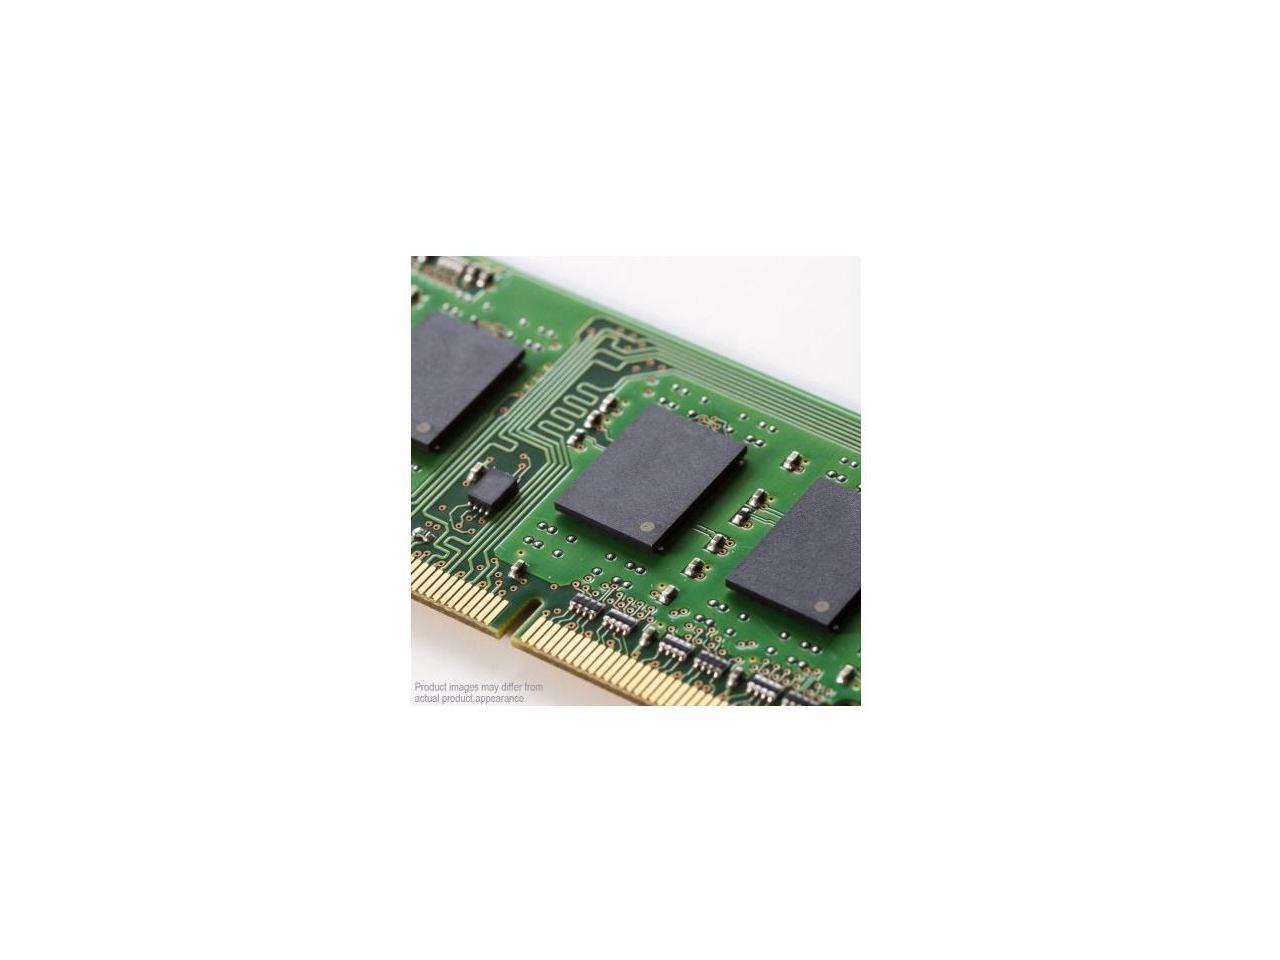 Lenovo - 7X77A01302 - Lenovo 16GB DDR4 SDRAM Memory Module - 16 GB (1 x 16 GB) - DDR4-2666/PC4-21300 DDR4 SDRAM - CL19 -